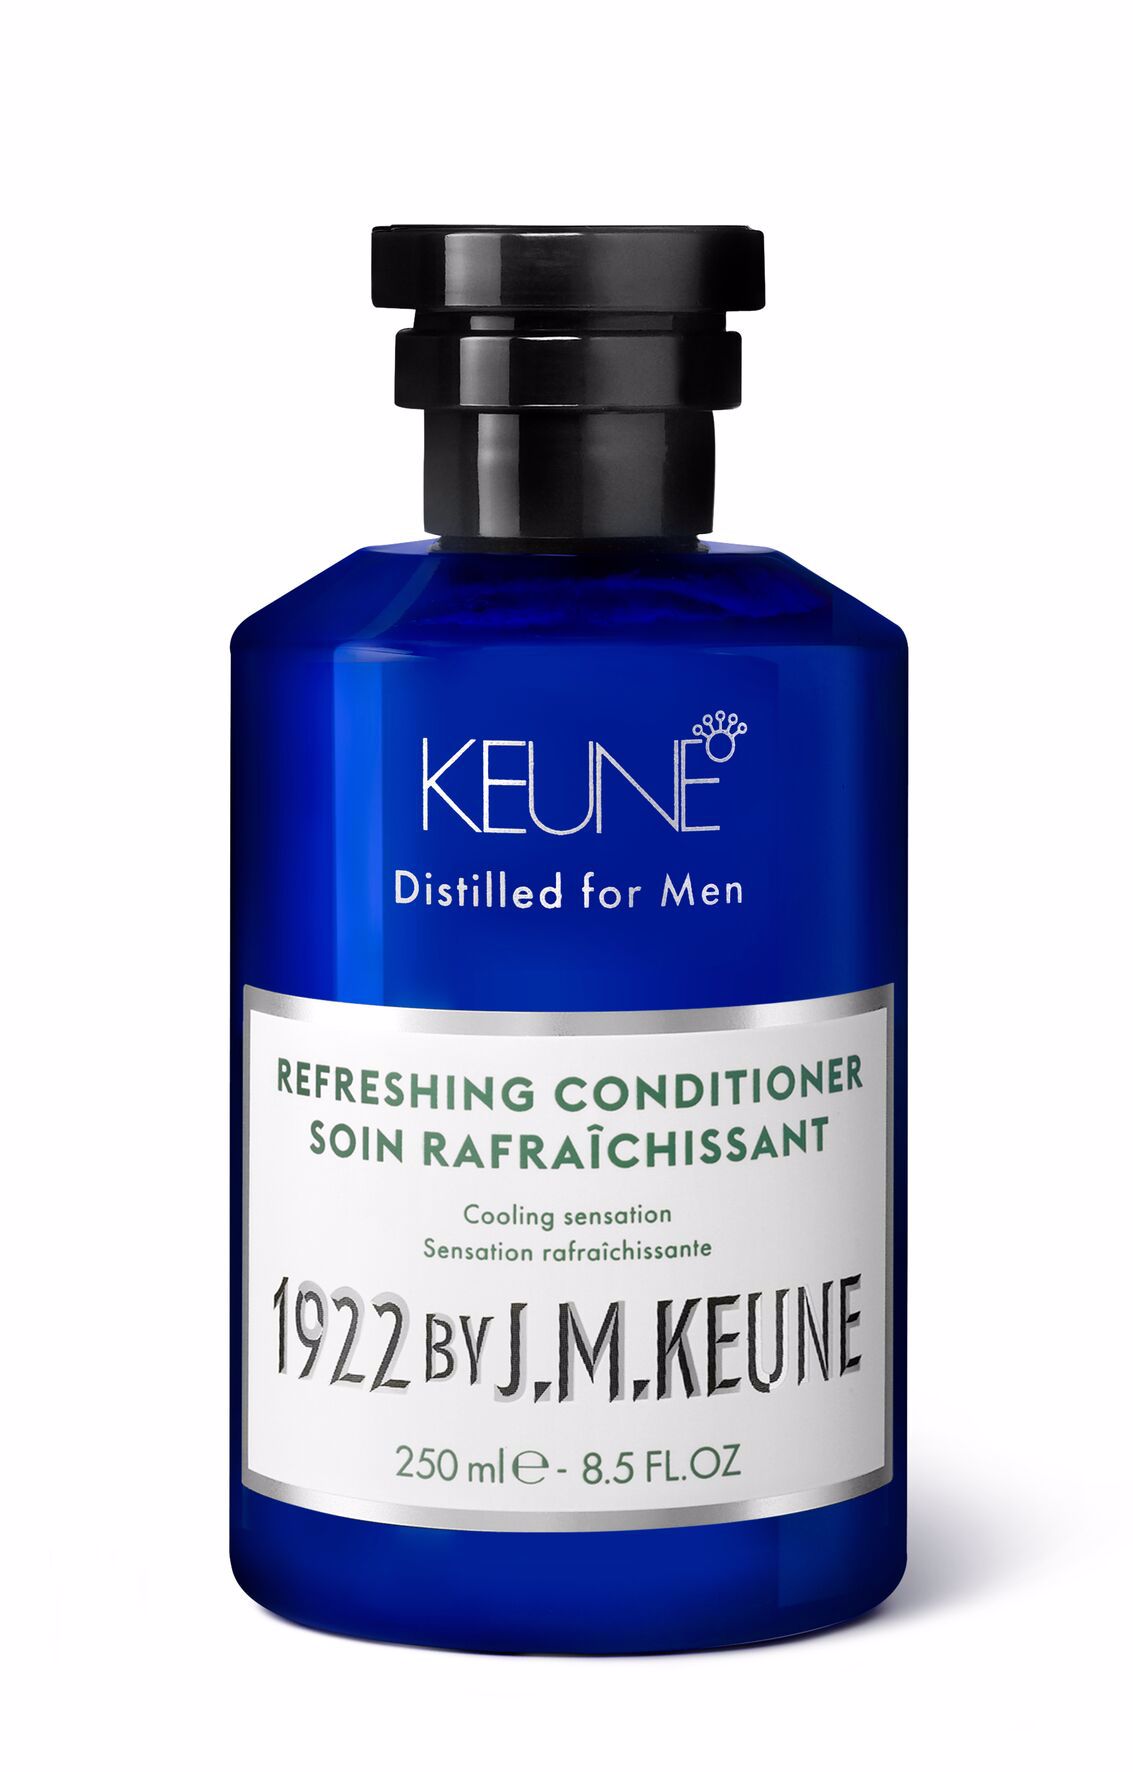 Männer-Conditioner, um Feuchtigkeit für deine Haare zu liefern. Entdecke den erfrischenden Conditioner. Die perfekte Ergänzung zum Refreshing Shampoo: unser Refreshing Conditioner.